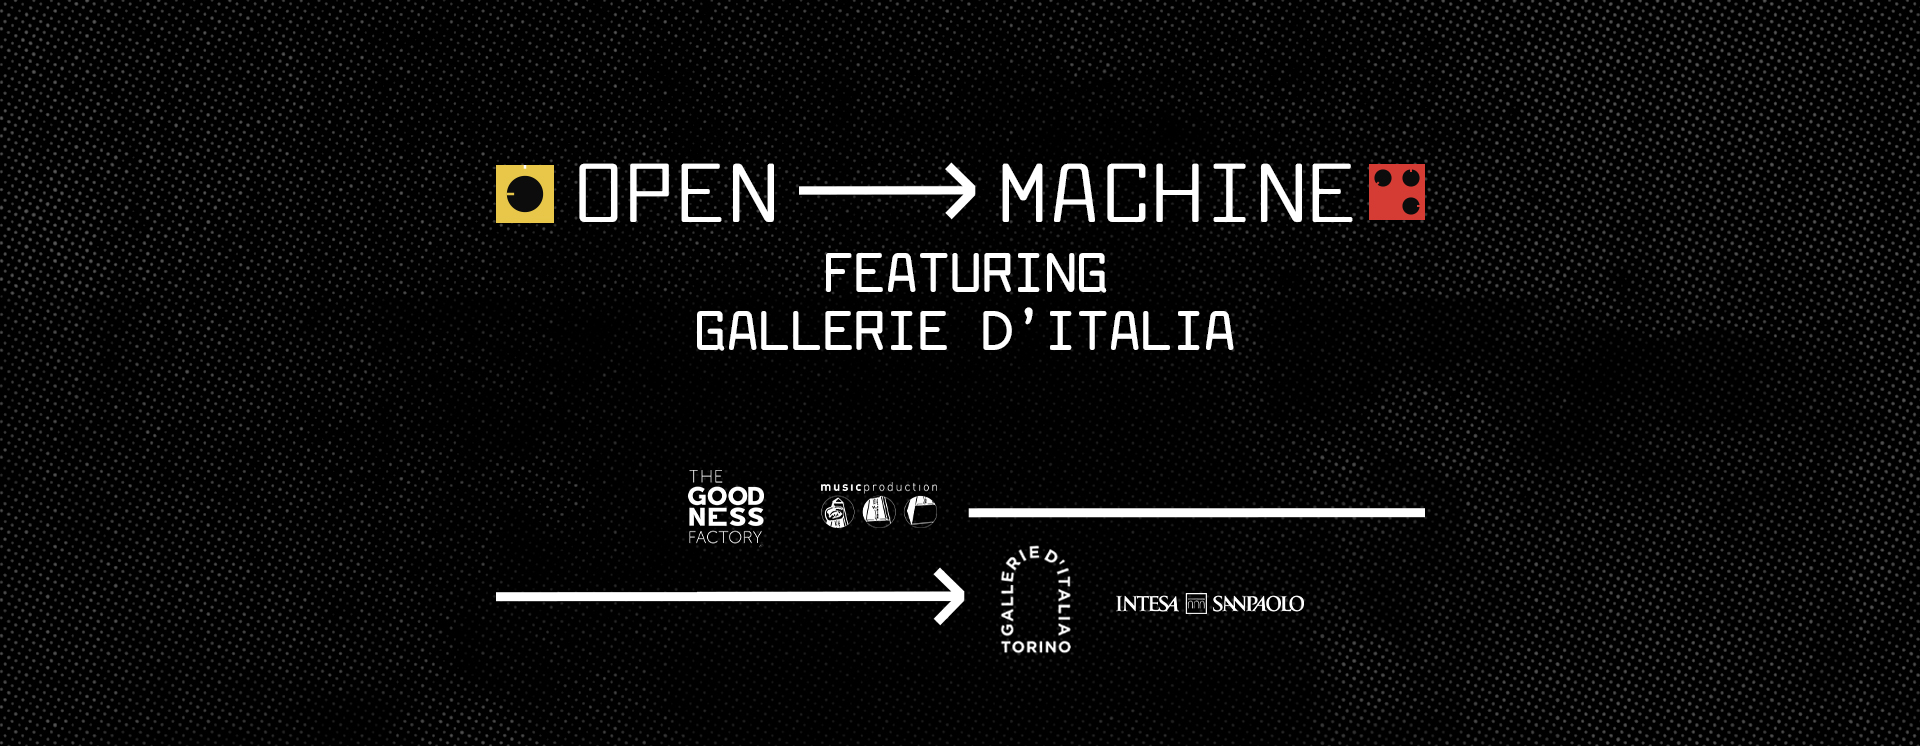 Open Machine featuring Gallerie d'Italia